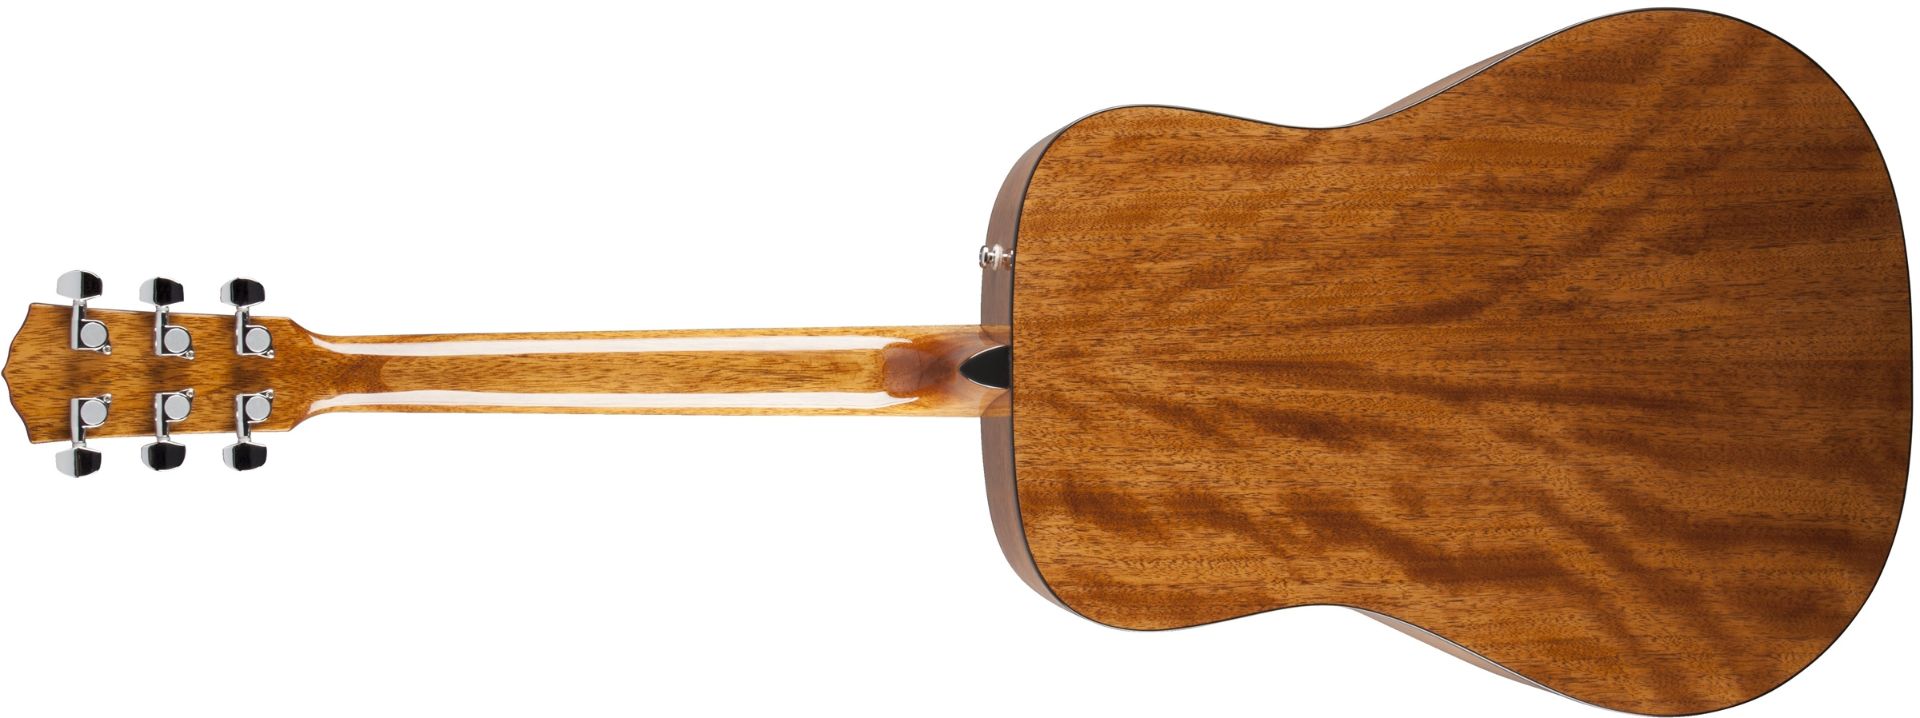 Fender CD-60 DREADNOUGHT V3 DS Acoustic Guitar - Natural - Image 2 of 9